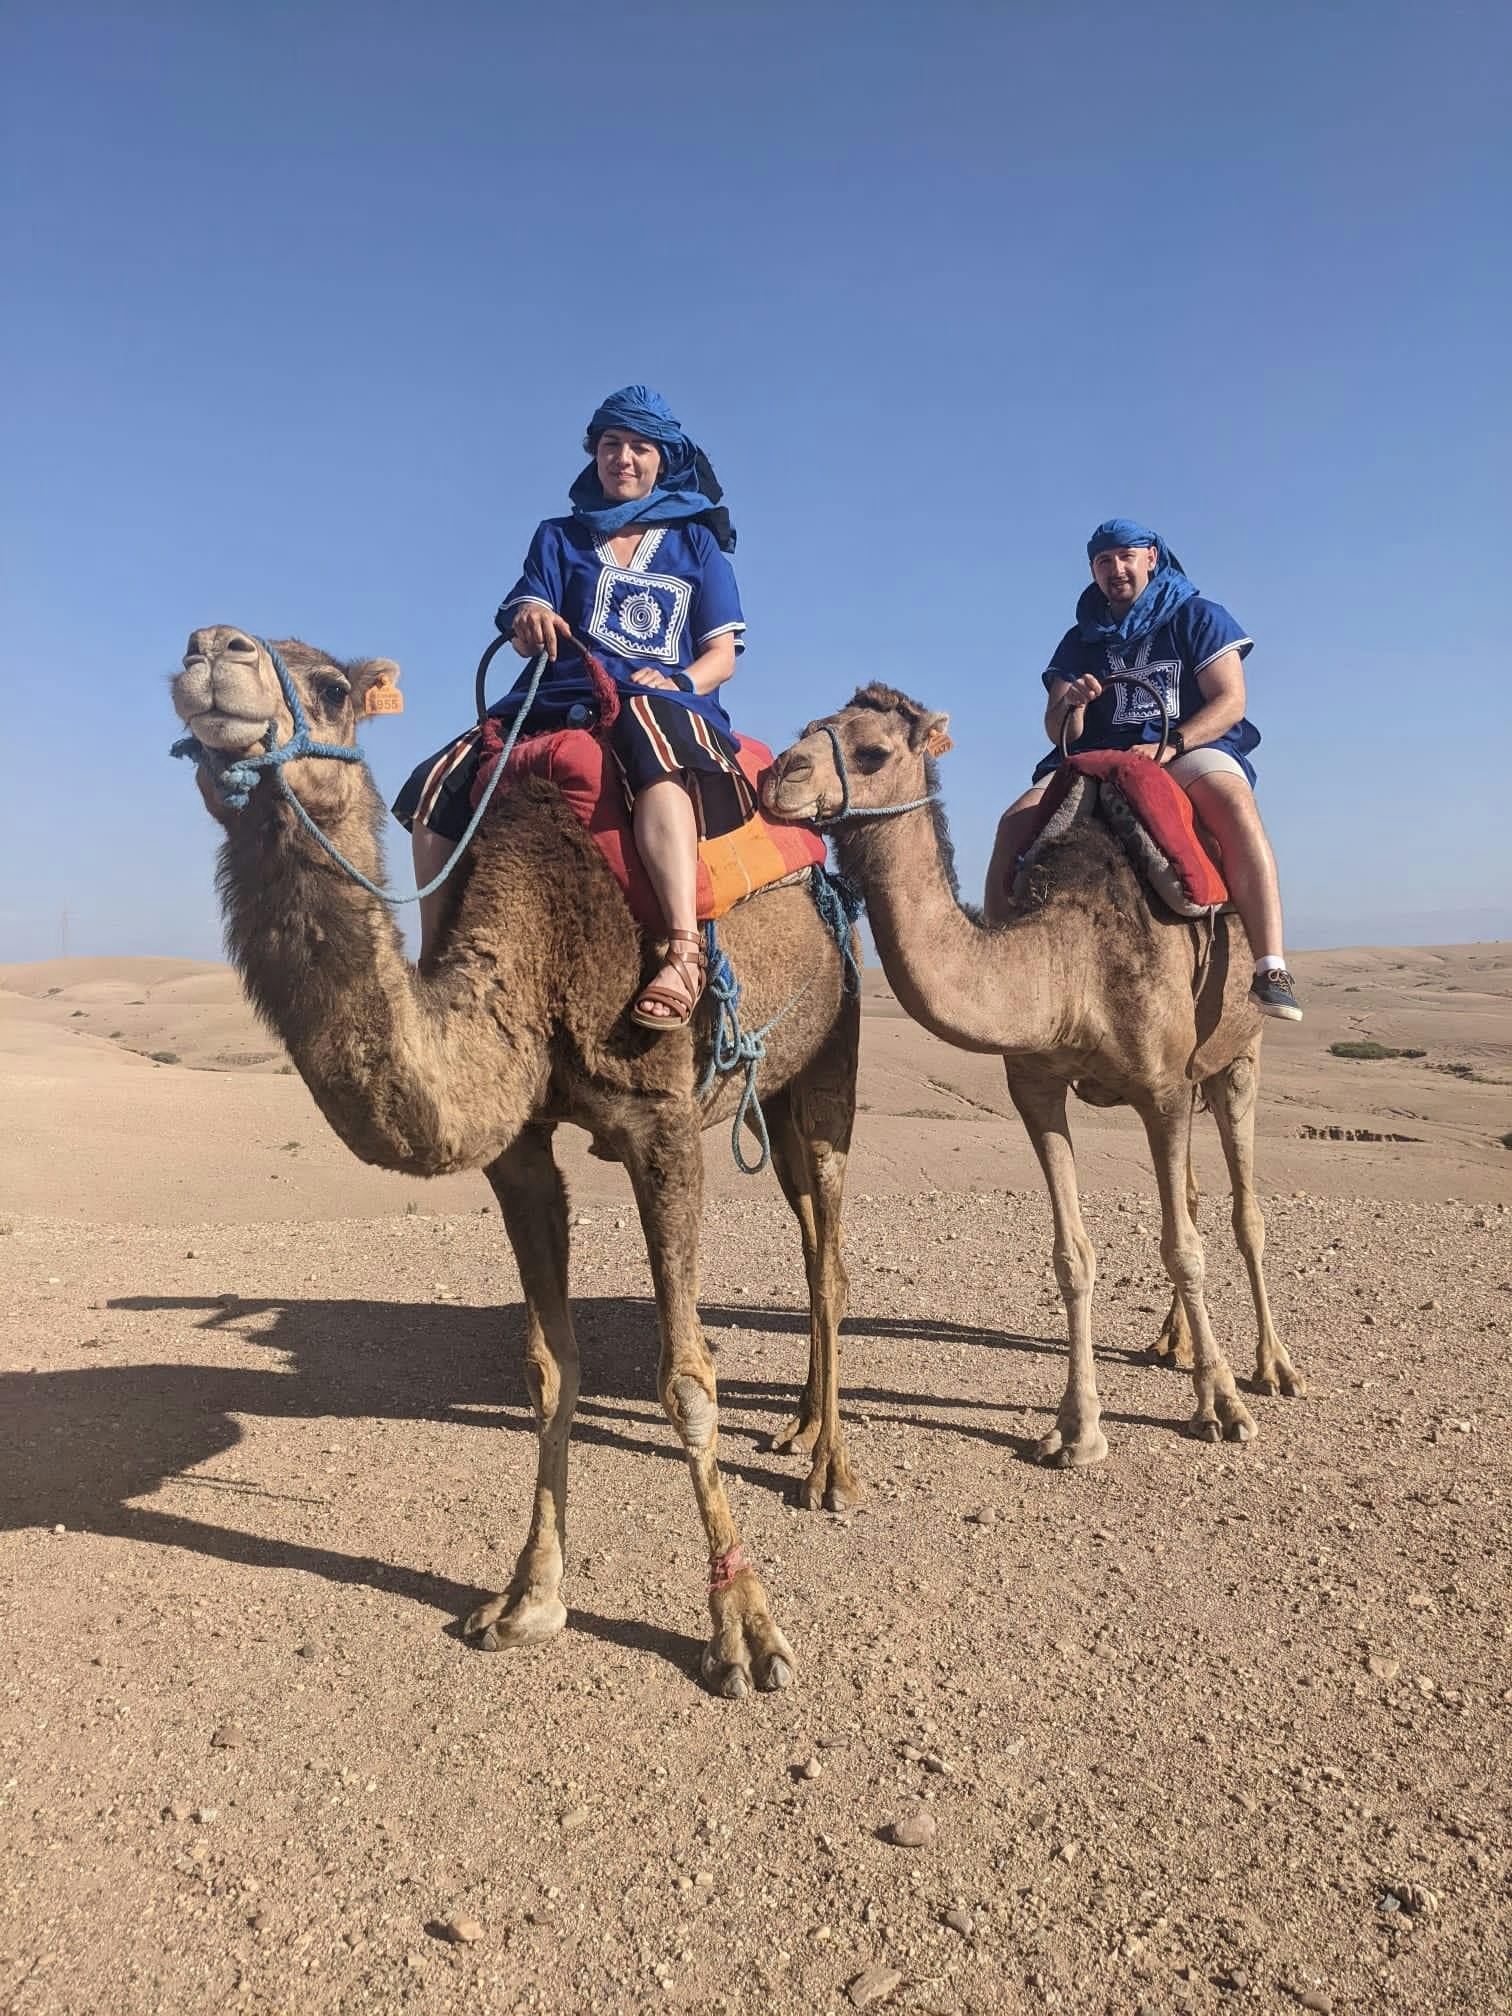 Tour de día completo por el desierto de Agafay con paseo en camello y almuerzo bereber